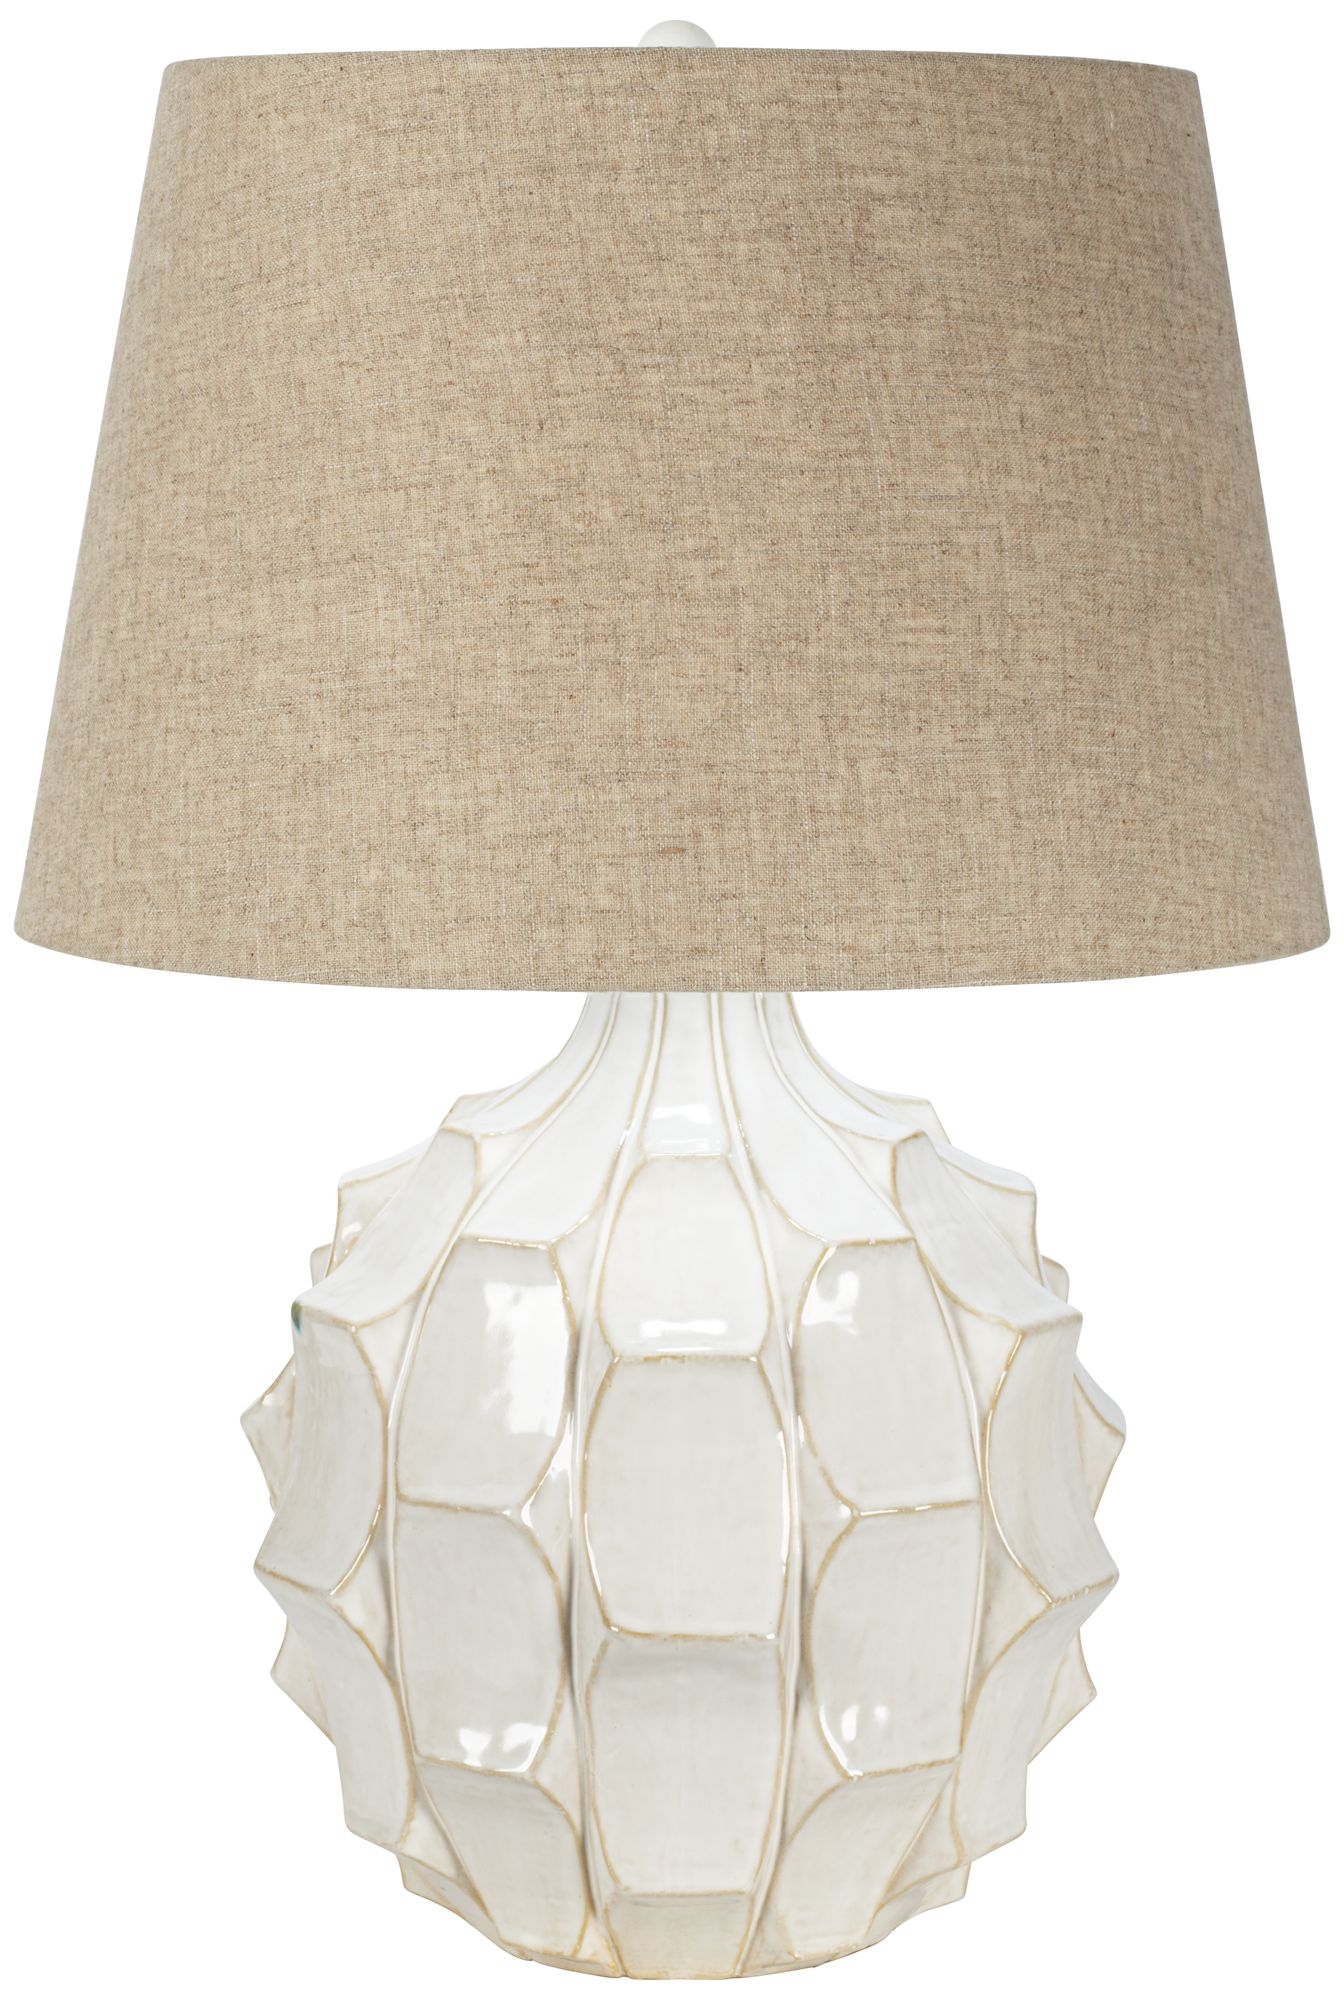 Cosgrove Mid-Century White Ceramic Table Lamp - Image 0